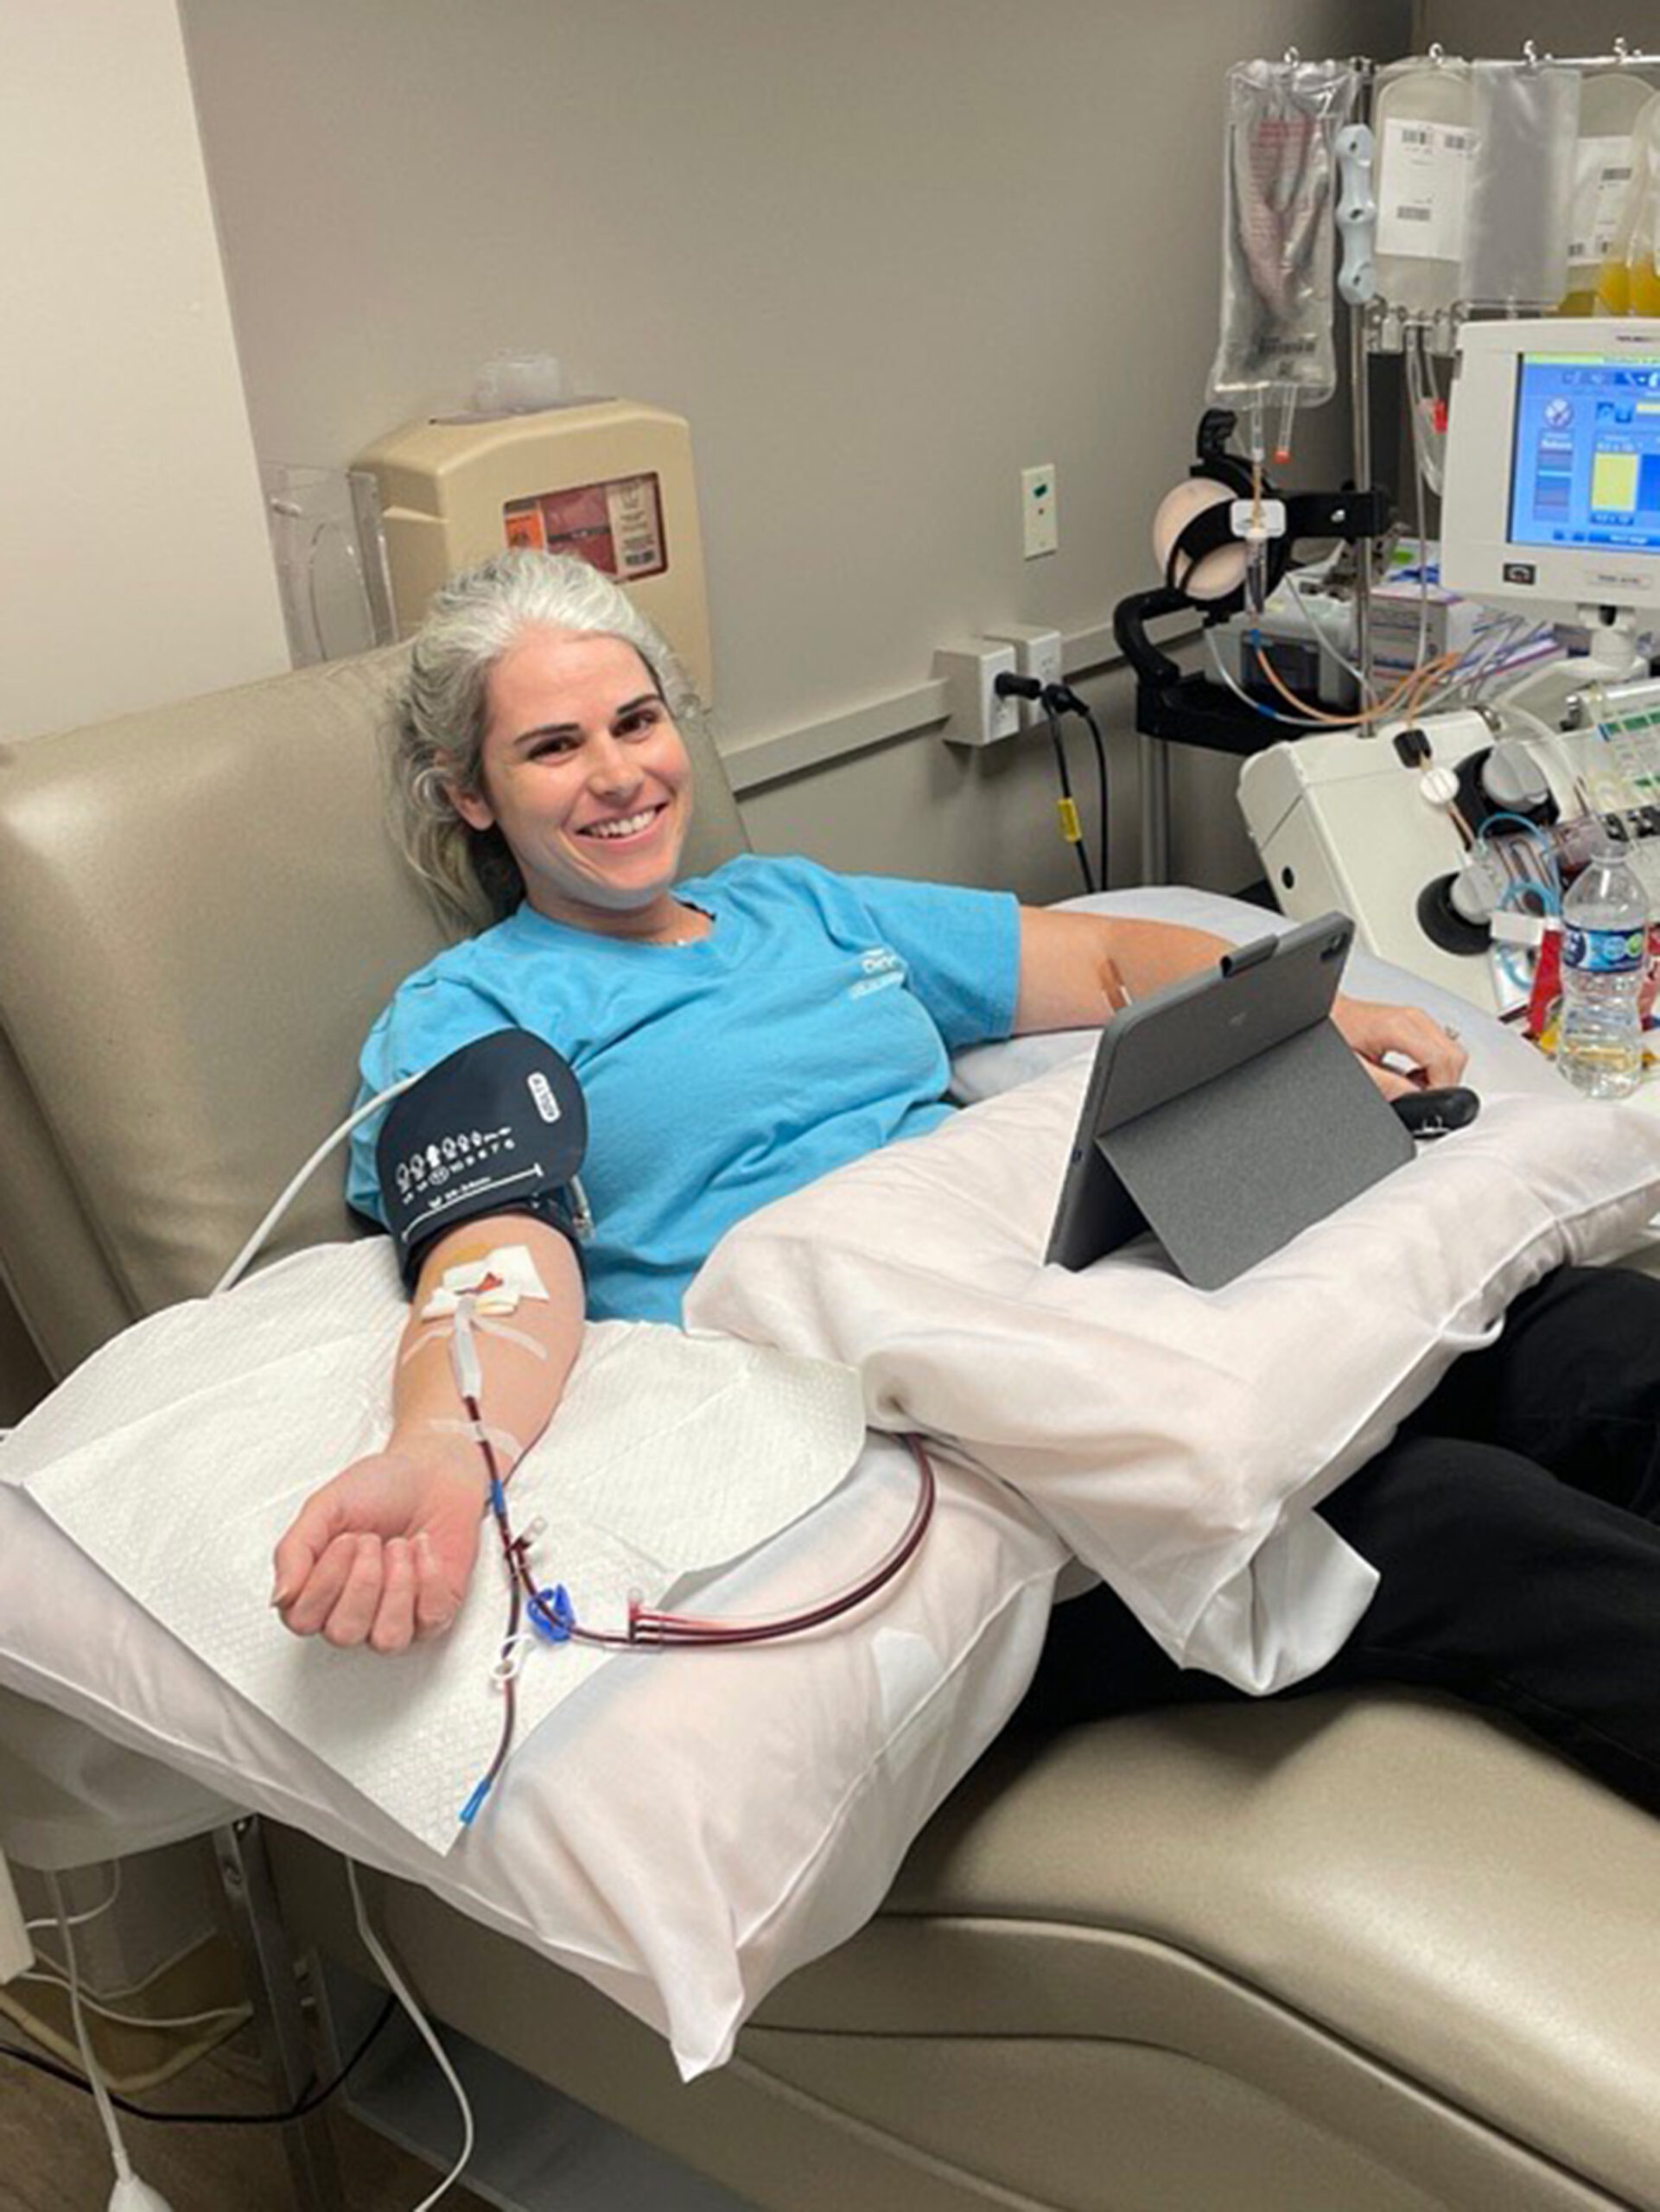 Logan donates platelets at the blood blank at CHOC